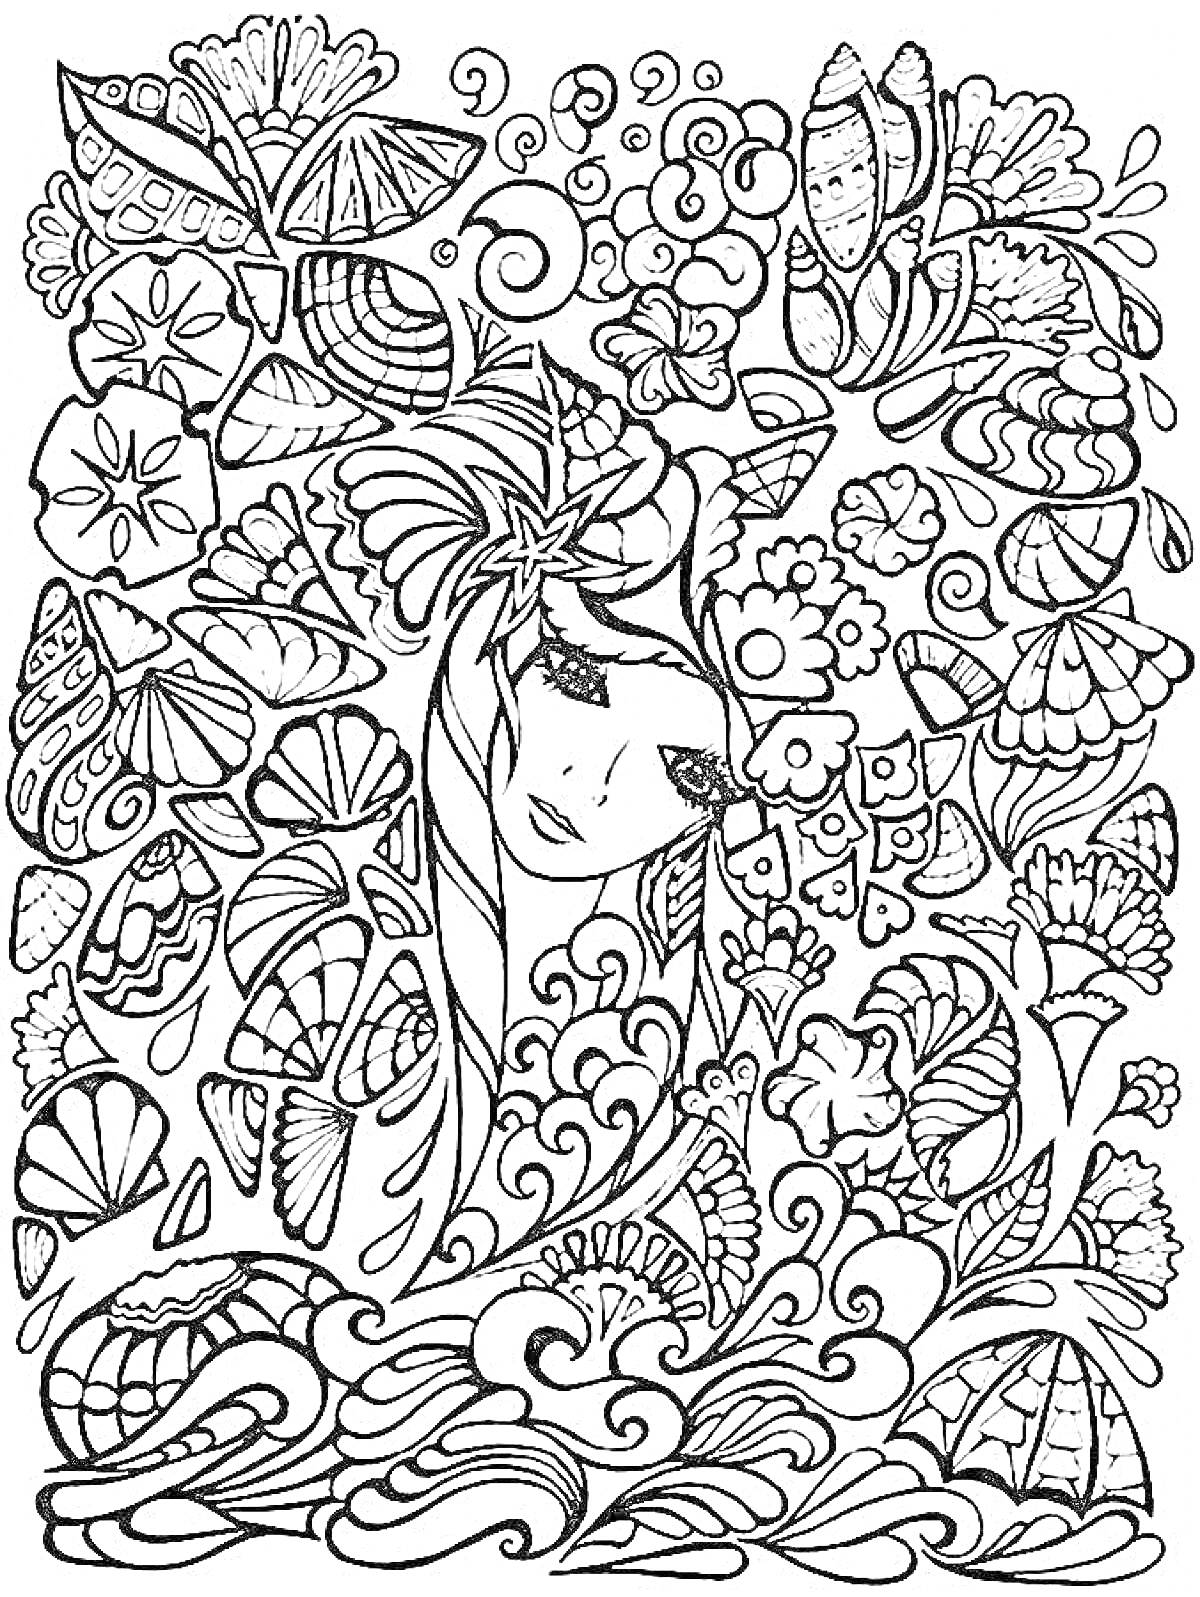 Раскраска Портрет девушки с цветами и раковинами на фоне воды и листьев